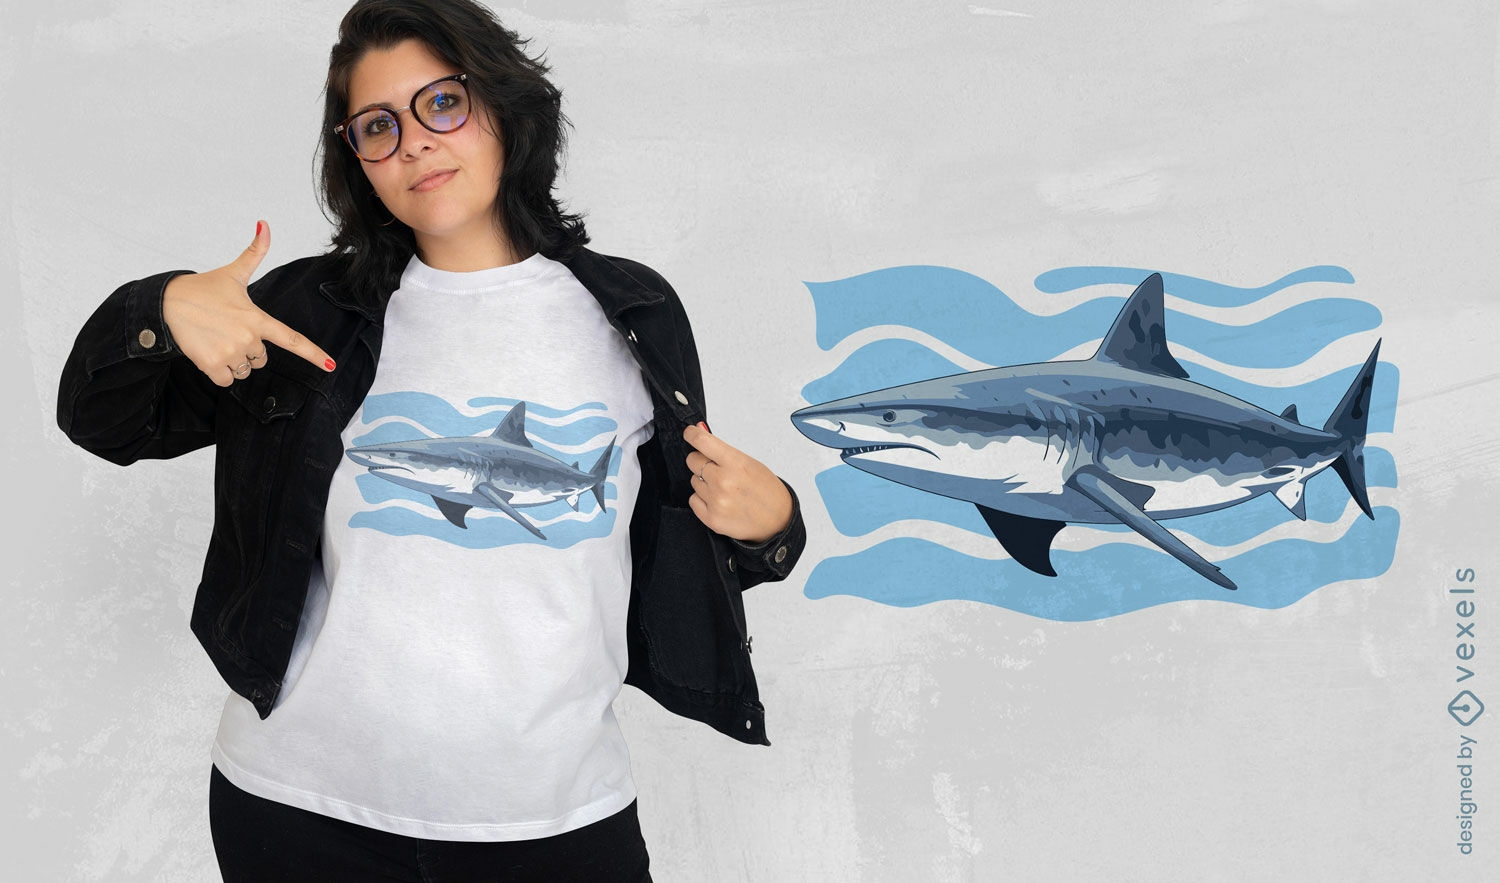 Design realista de camiseta para nadar com tubar?o